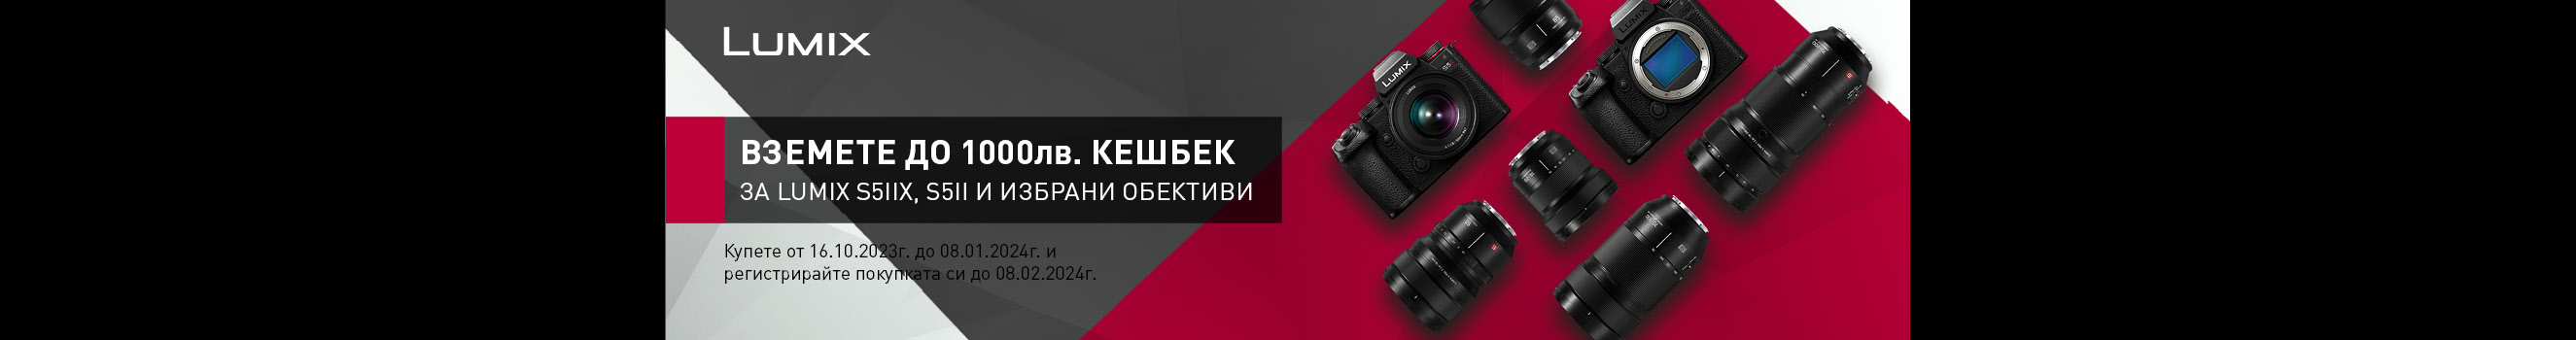 Вземете избрани фотоапарати и обективи Panasonic Lumix S с до 1000 лв. CashBack отстъпка след регистрация 